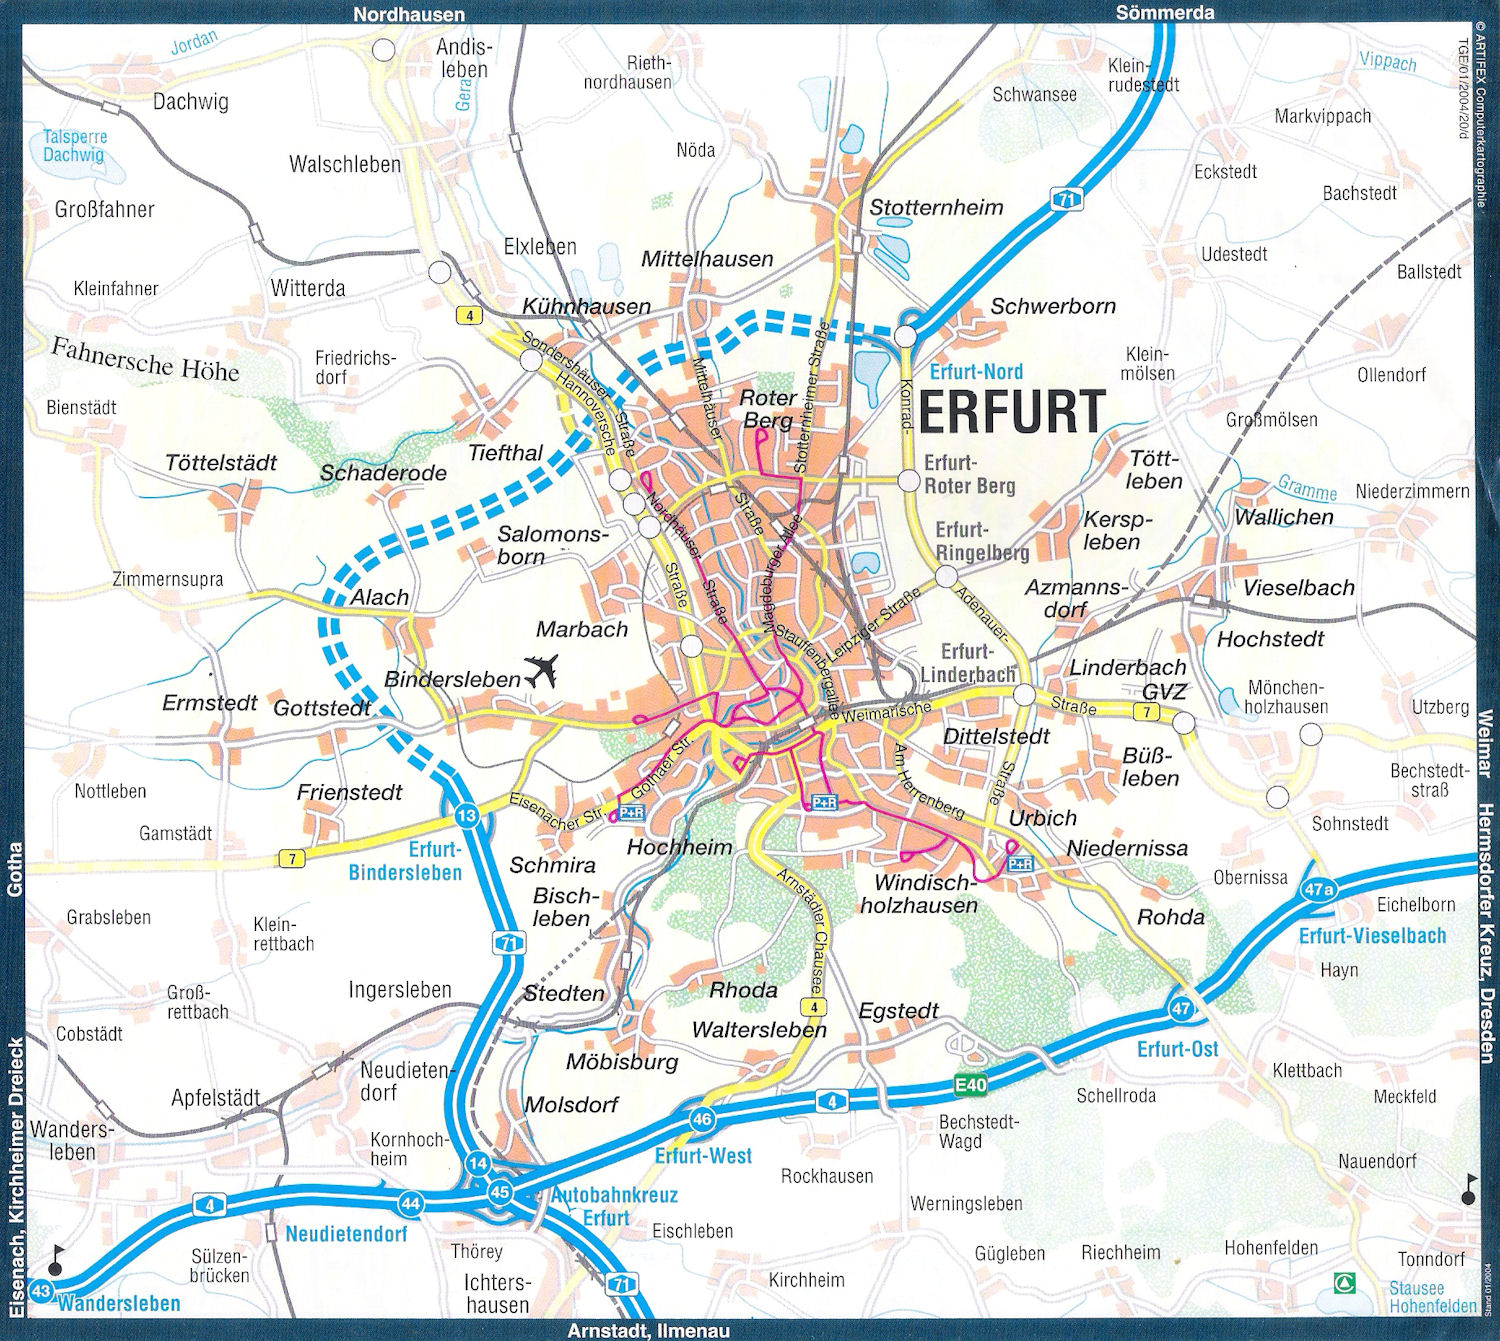 Erfurt road Map